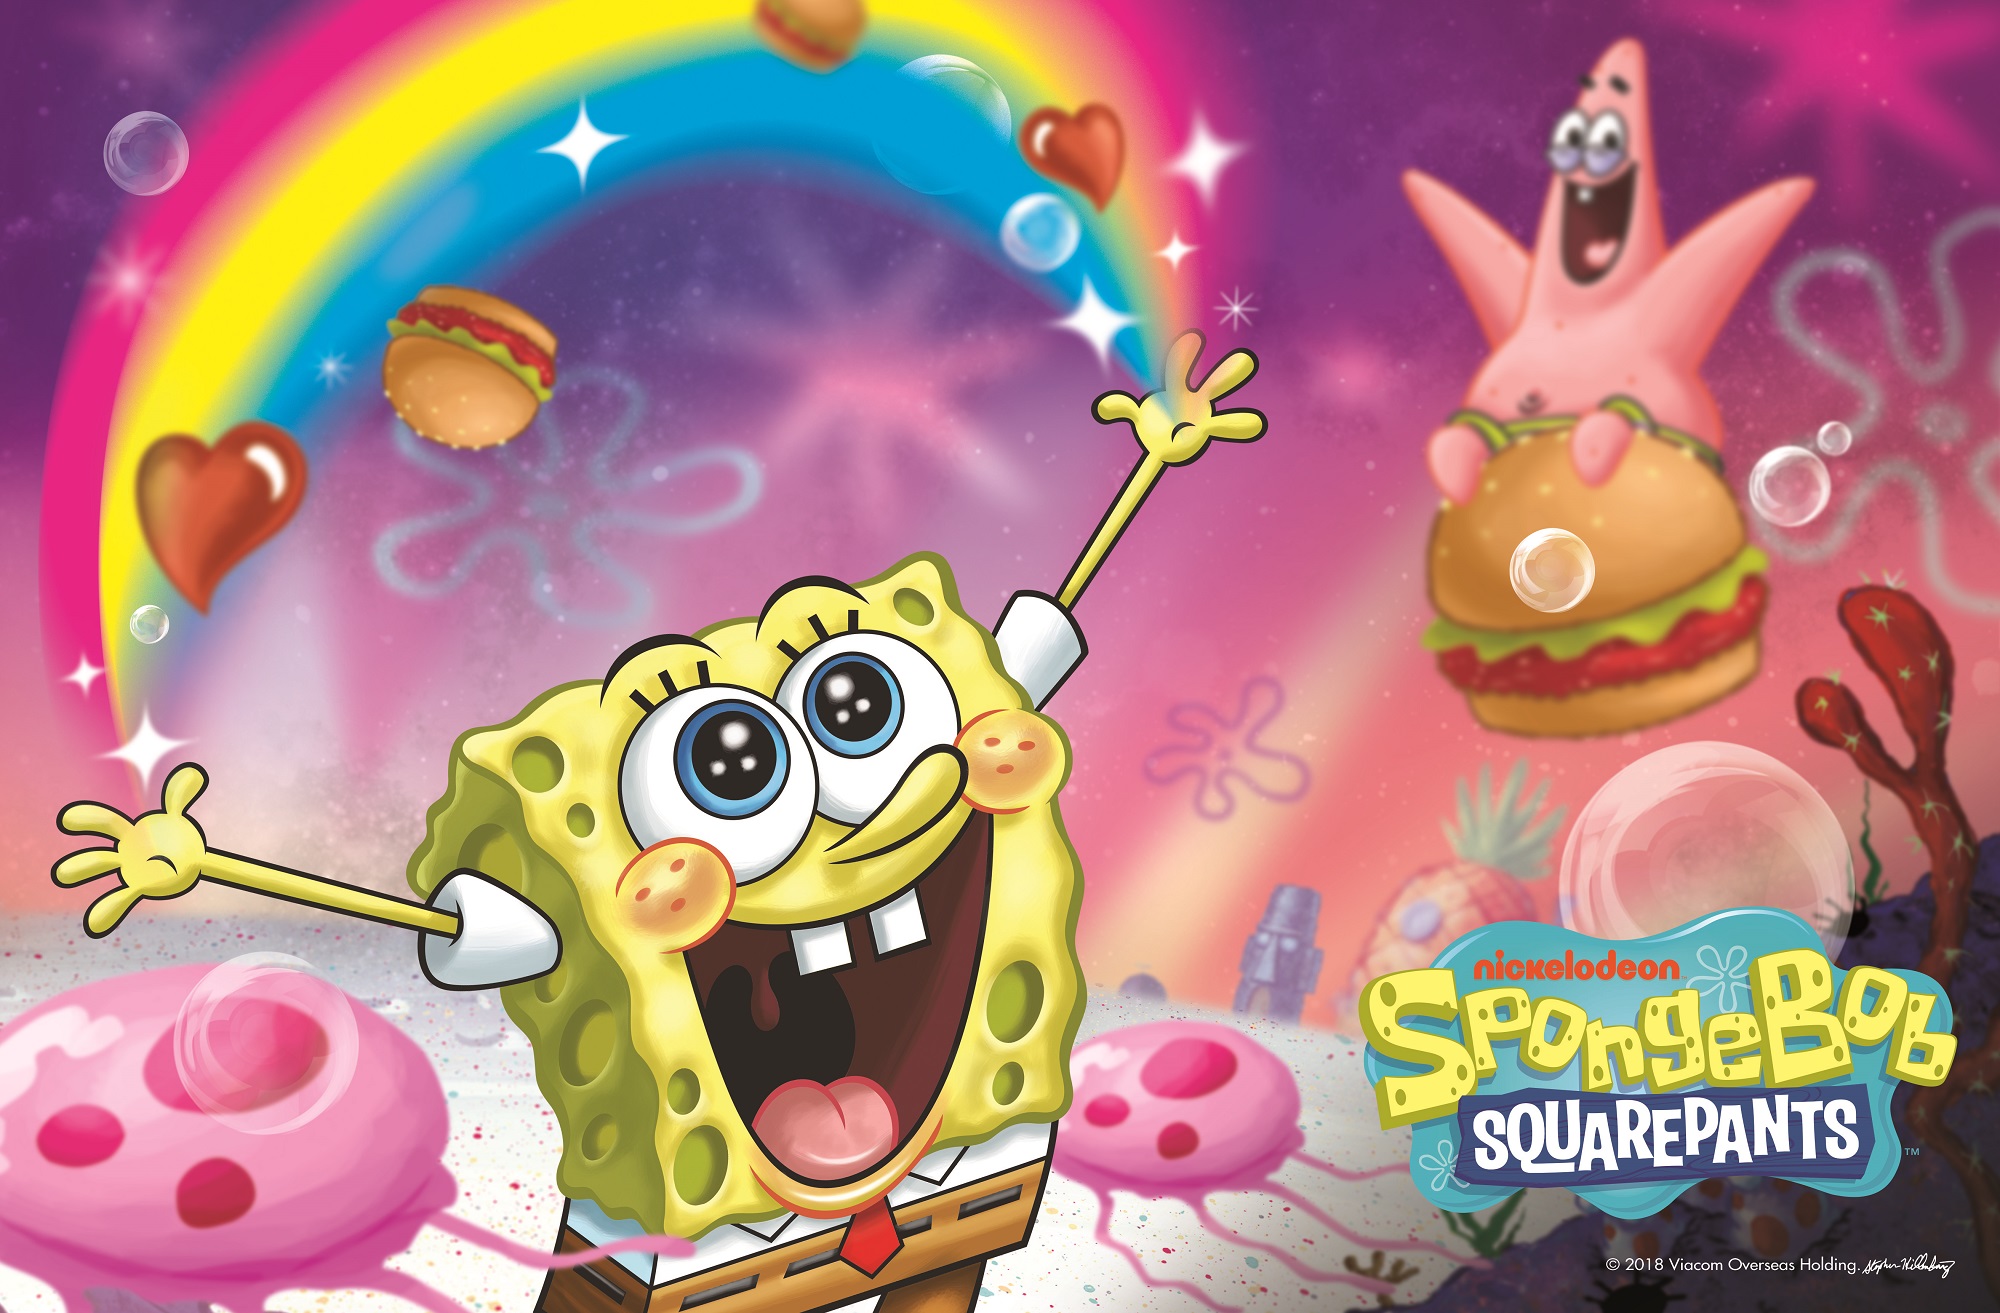 1. SpongeBob SquarePants (Credit - Nickelodeon).jpg